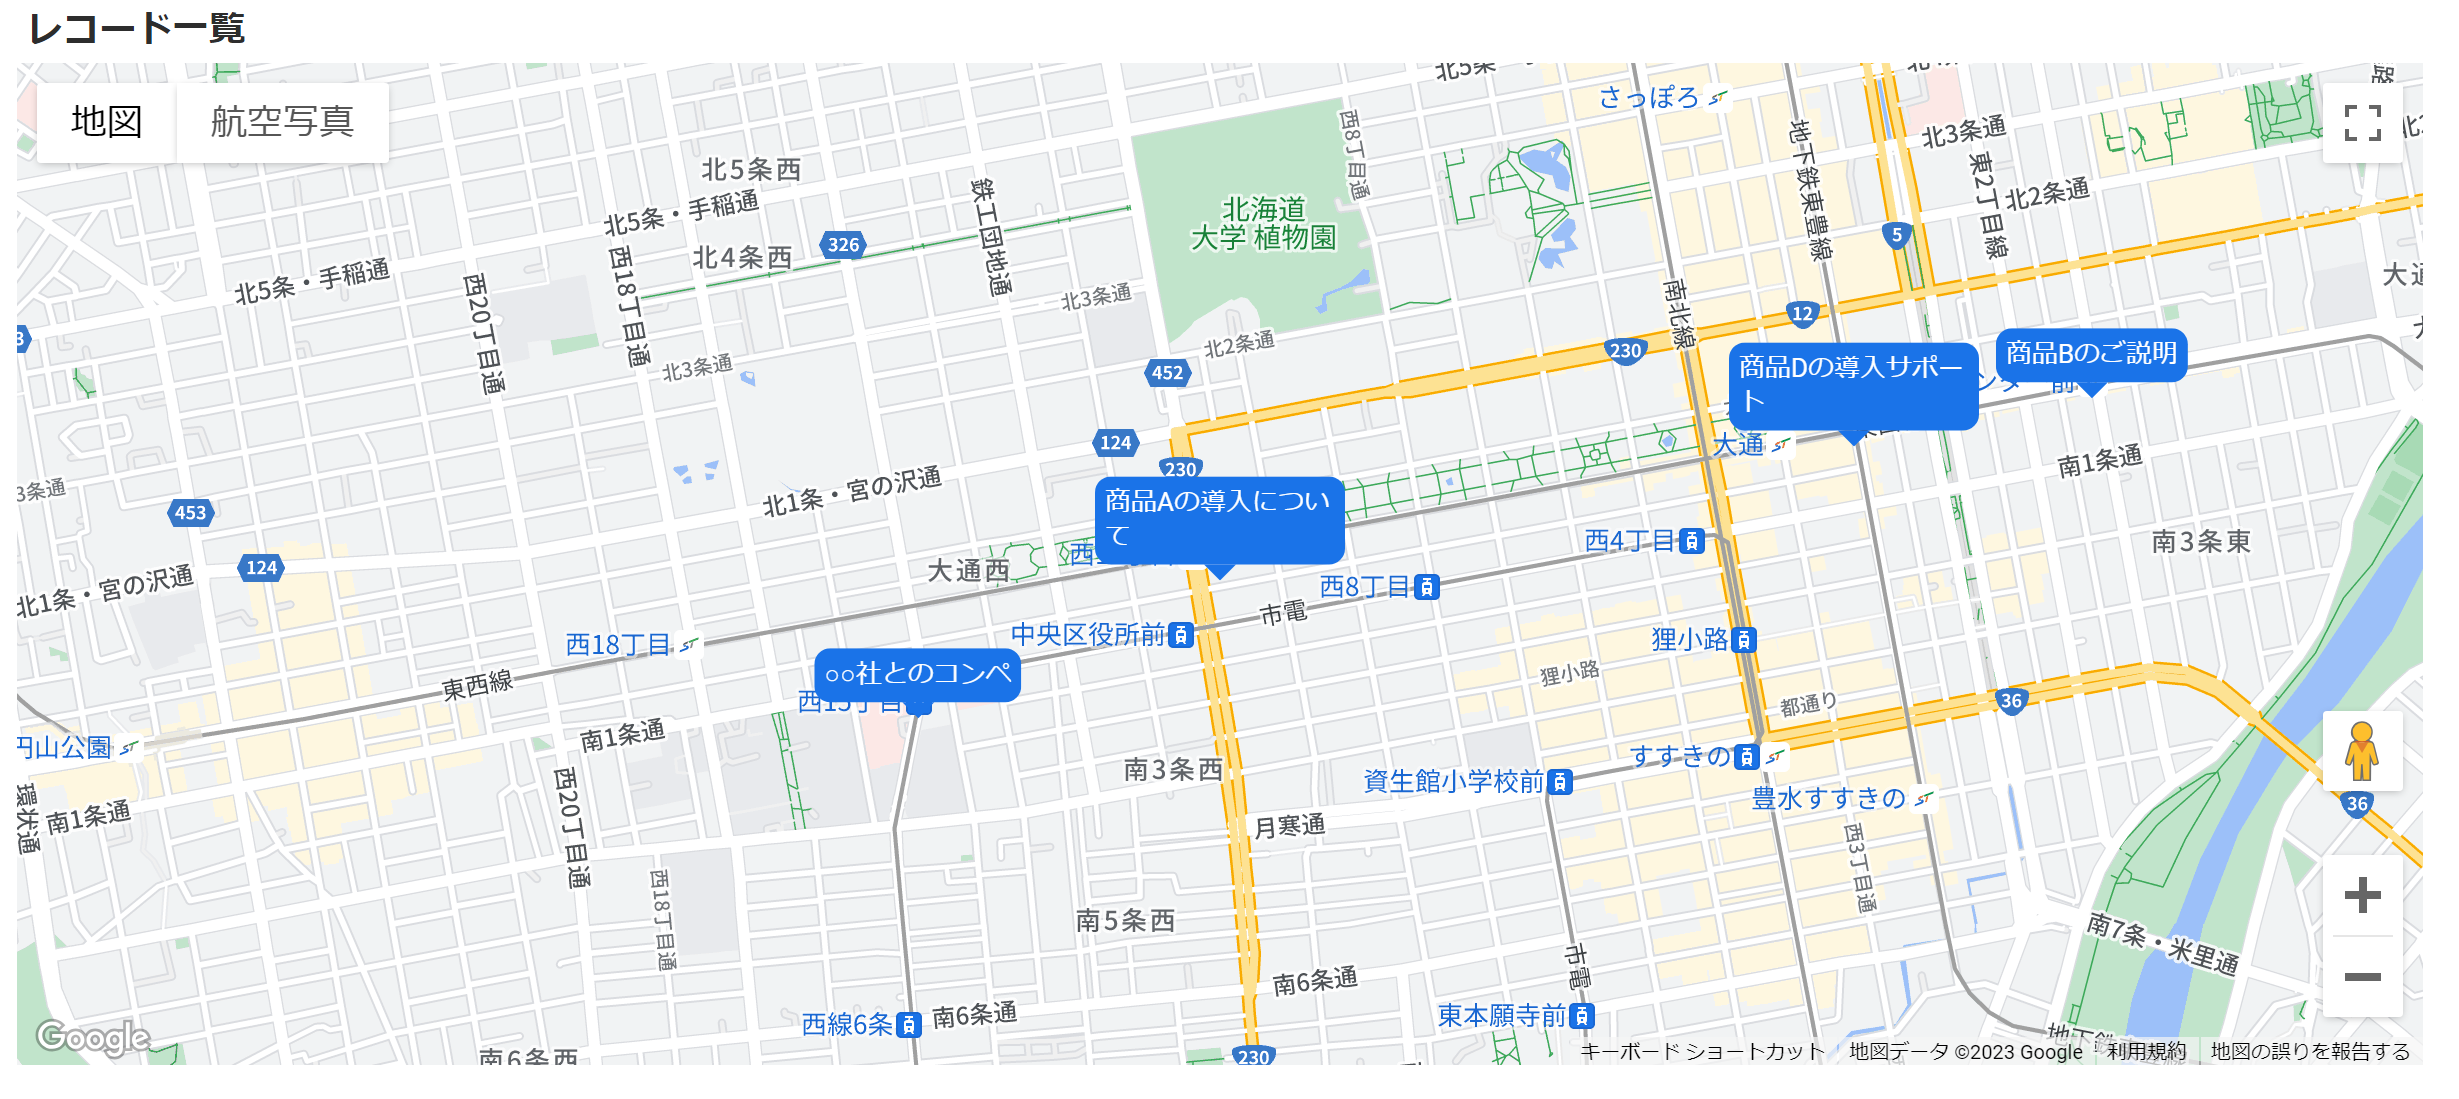 8. 地図表示機能_マーカー固定色青.png